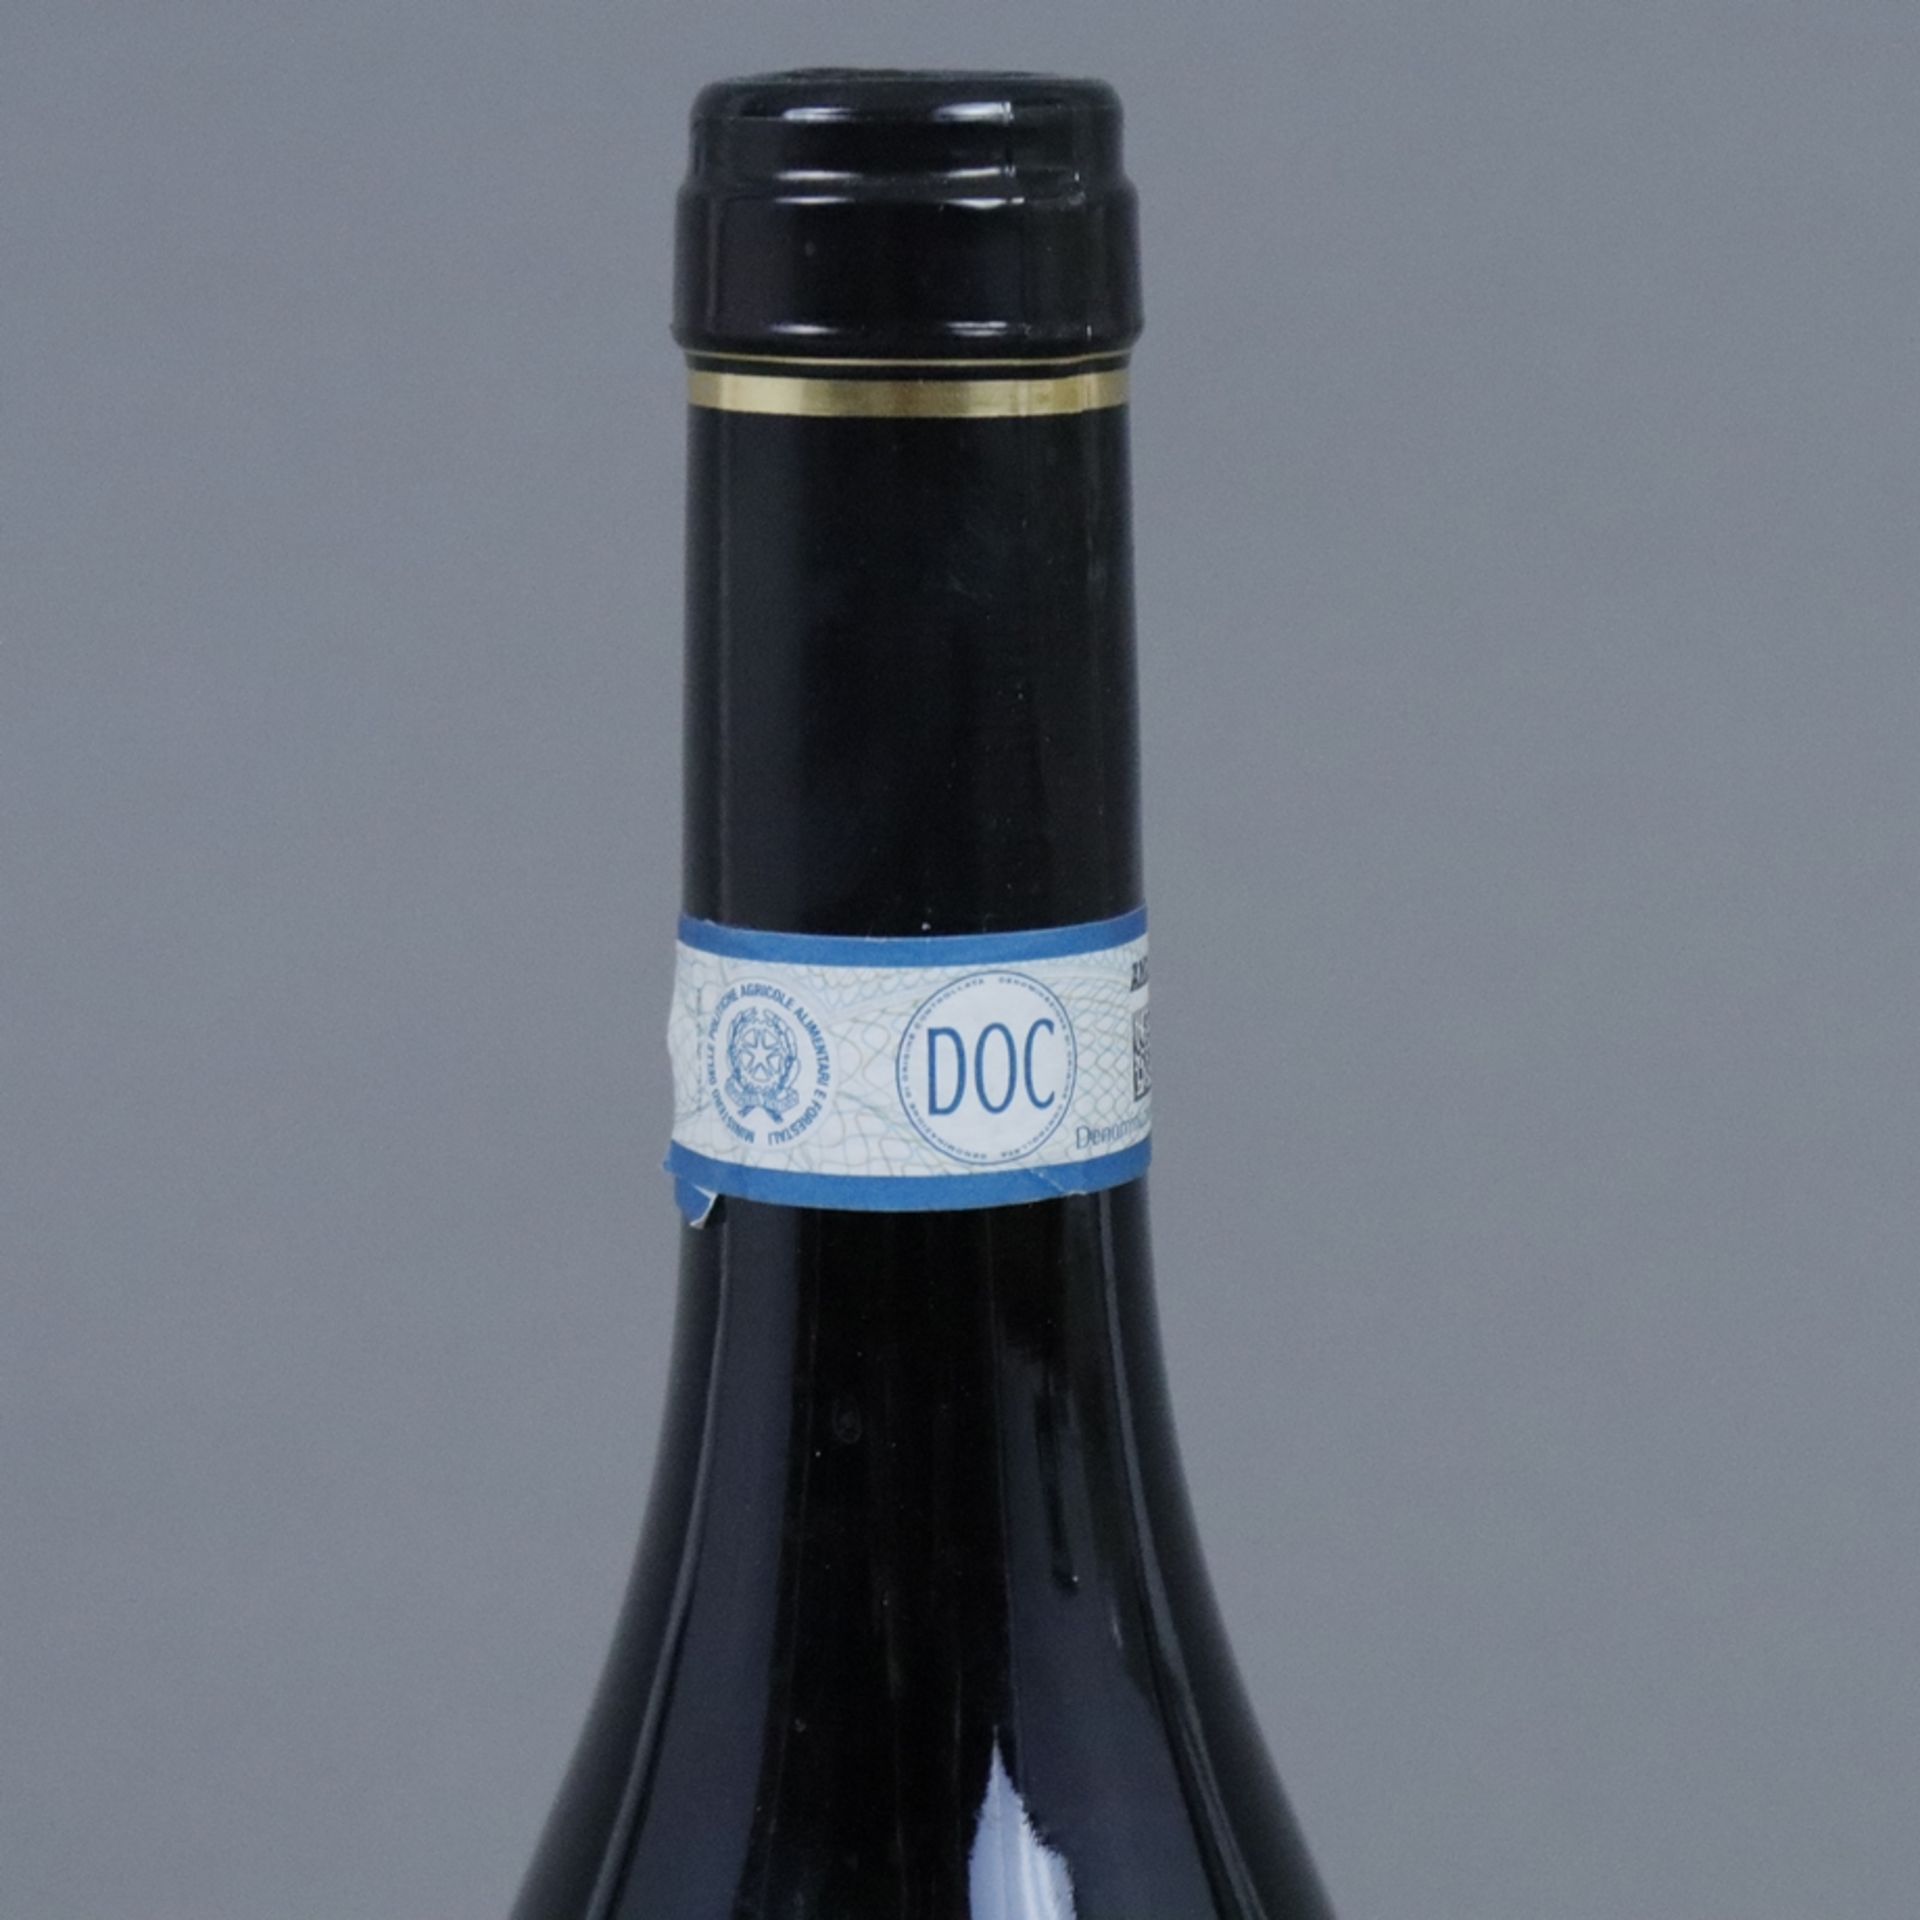 Wein - 2009 Tenuta Pule Amarone della Valpolicella Classico DOCG, Italien, 750 ml, Füllstand: Botto - Bild 2 aus 6